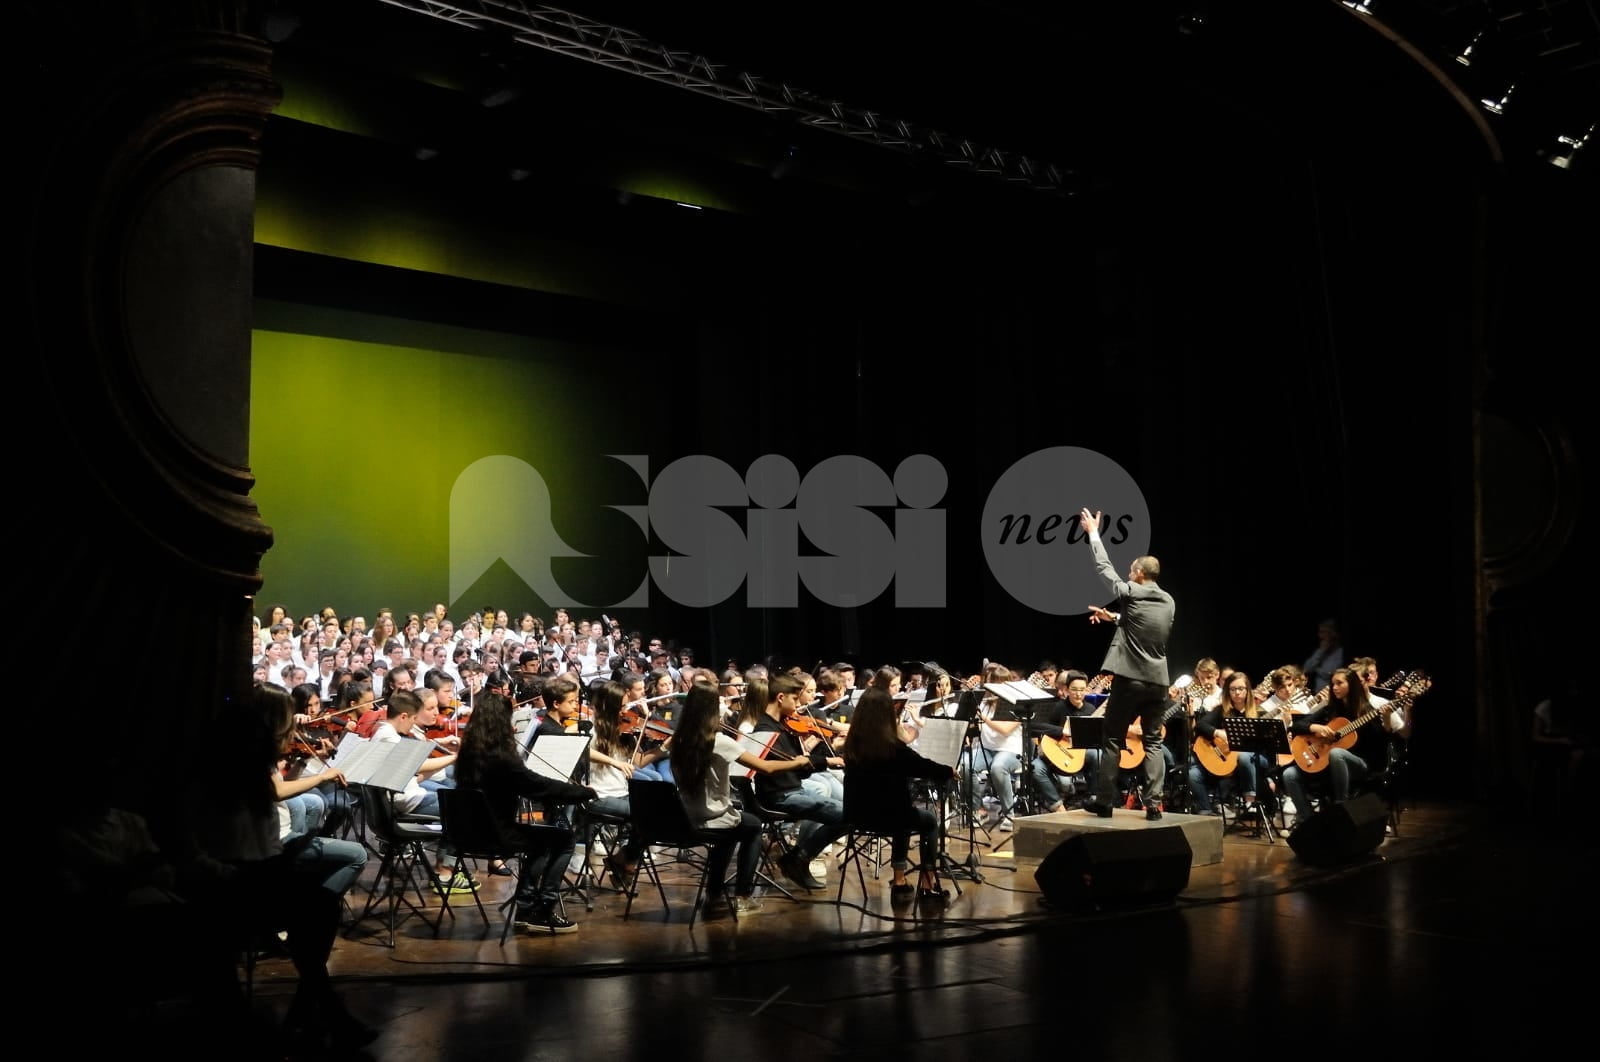 All'Istituto comprensivo Assisi 3 lezioni di strumento musicale e orchestra per gli ex allievi di musica